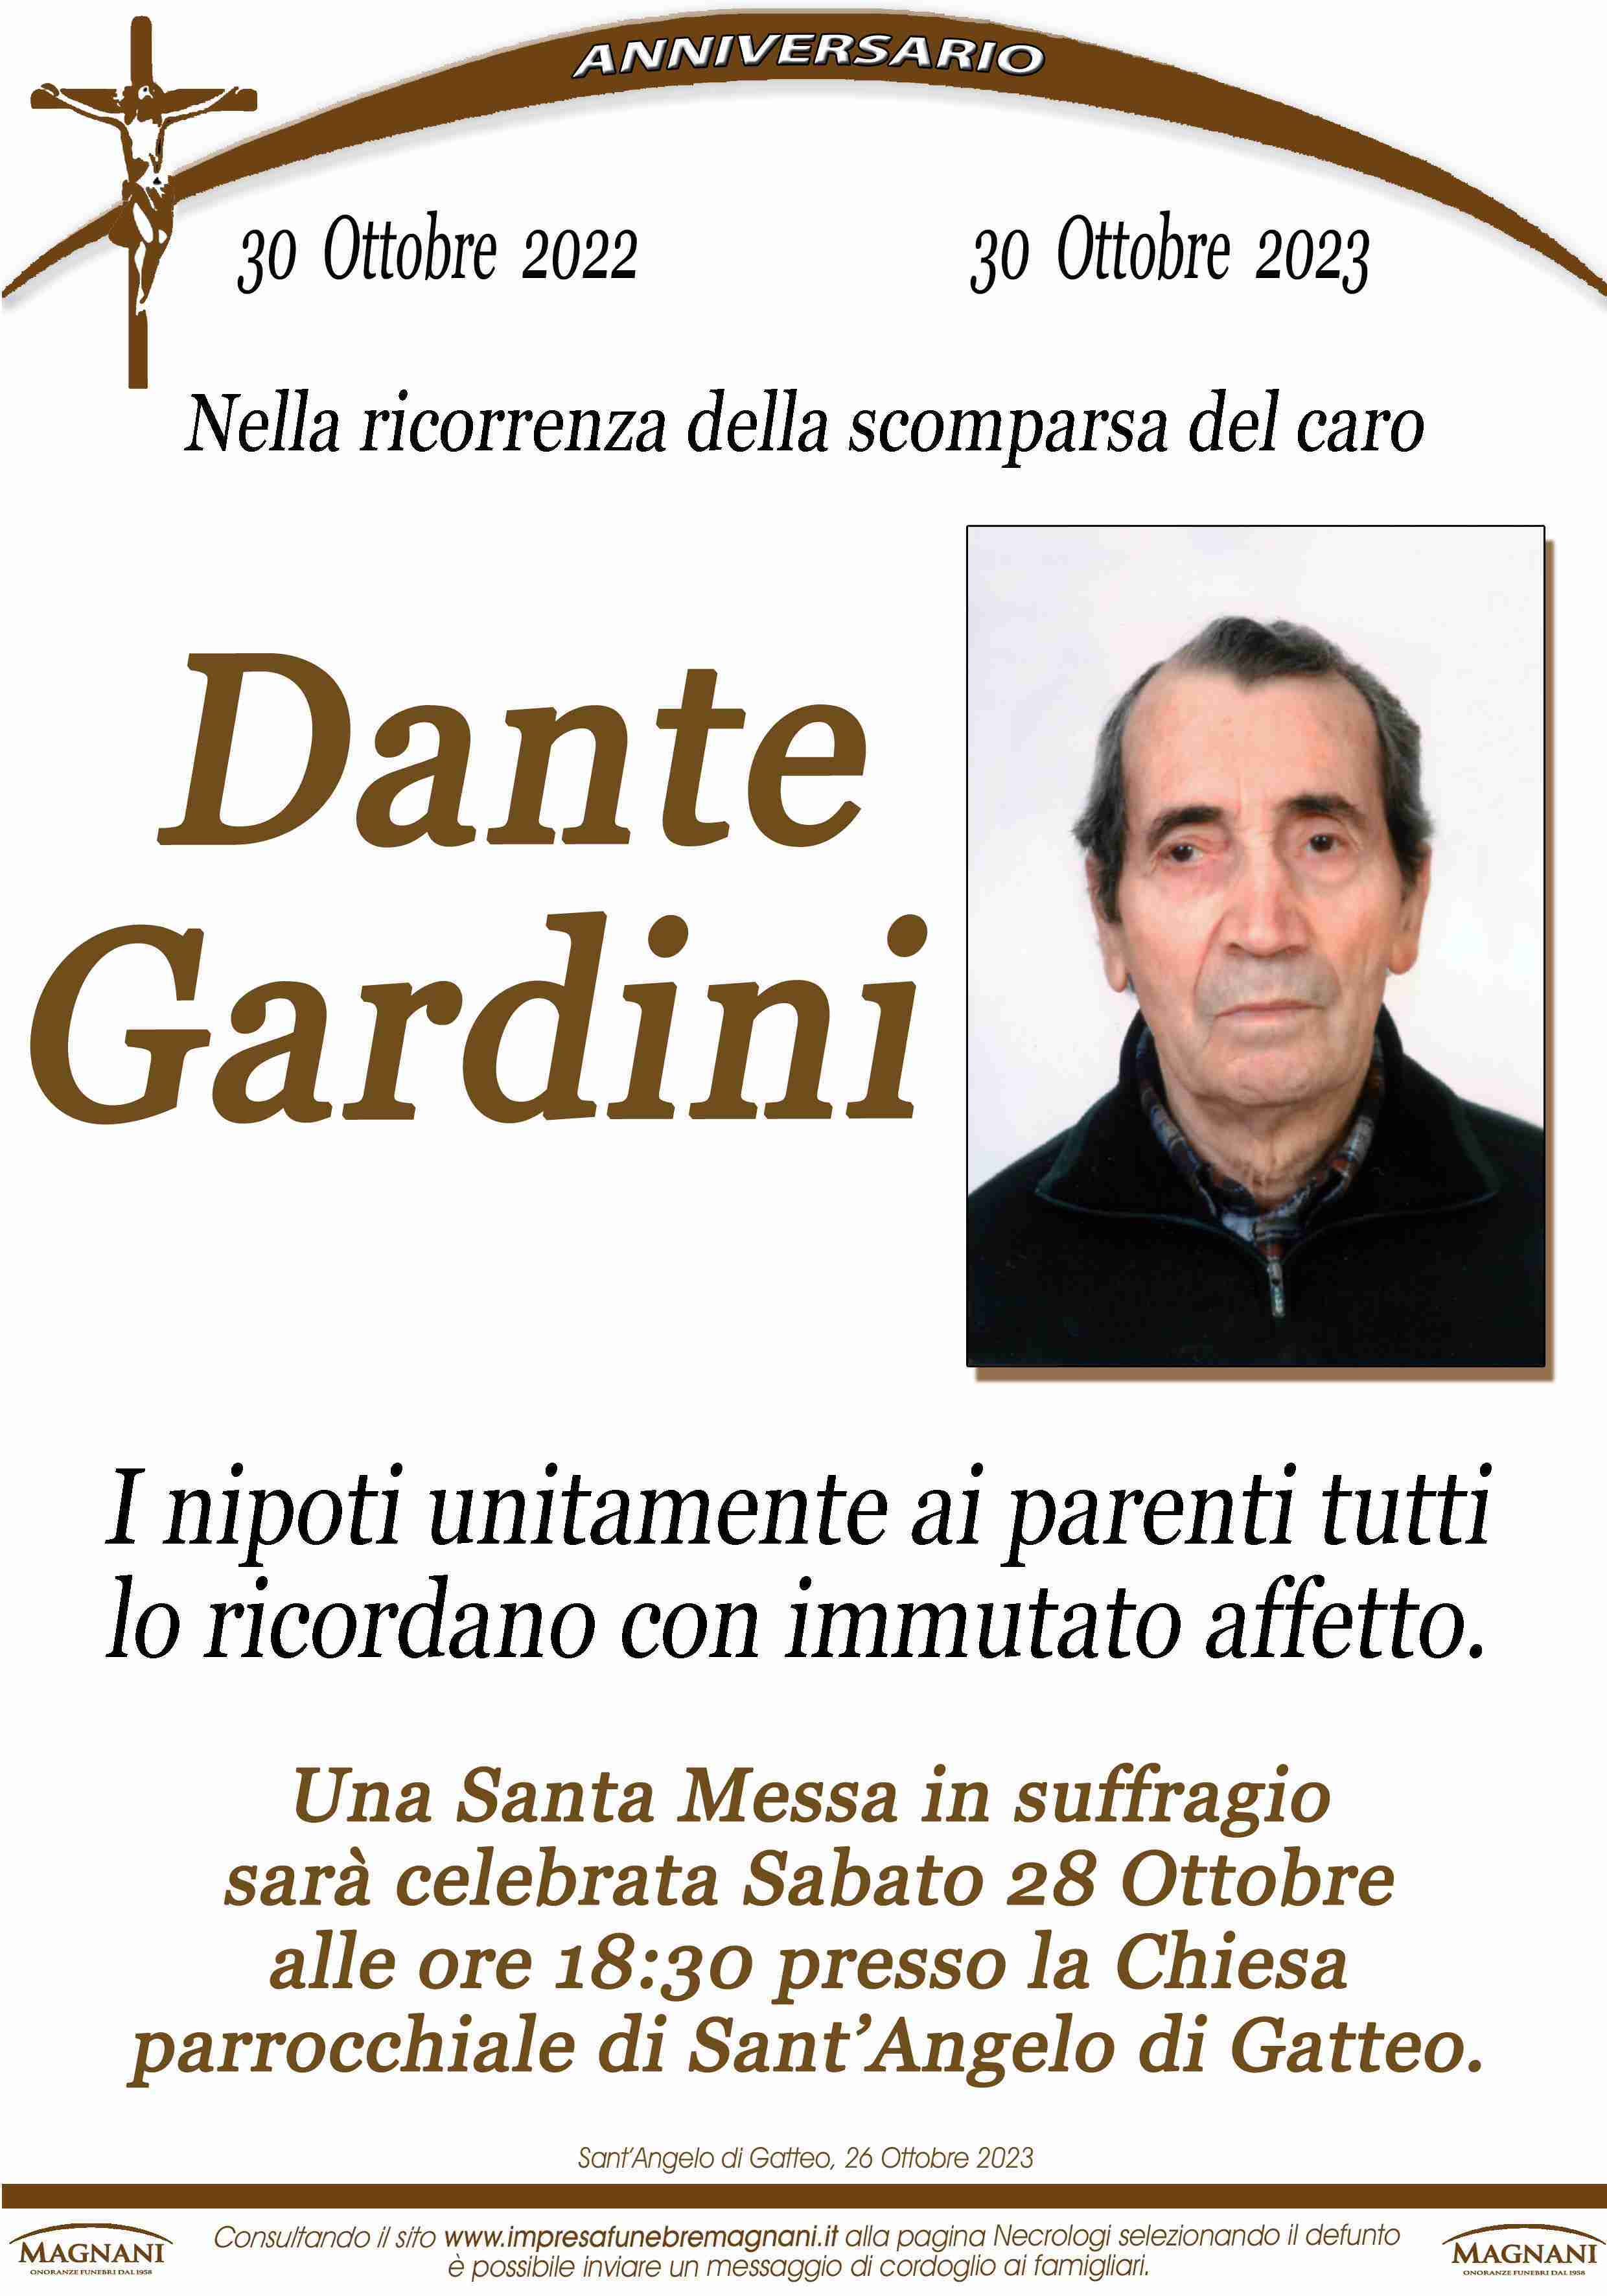 Dante Gardini